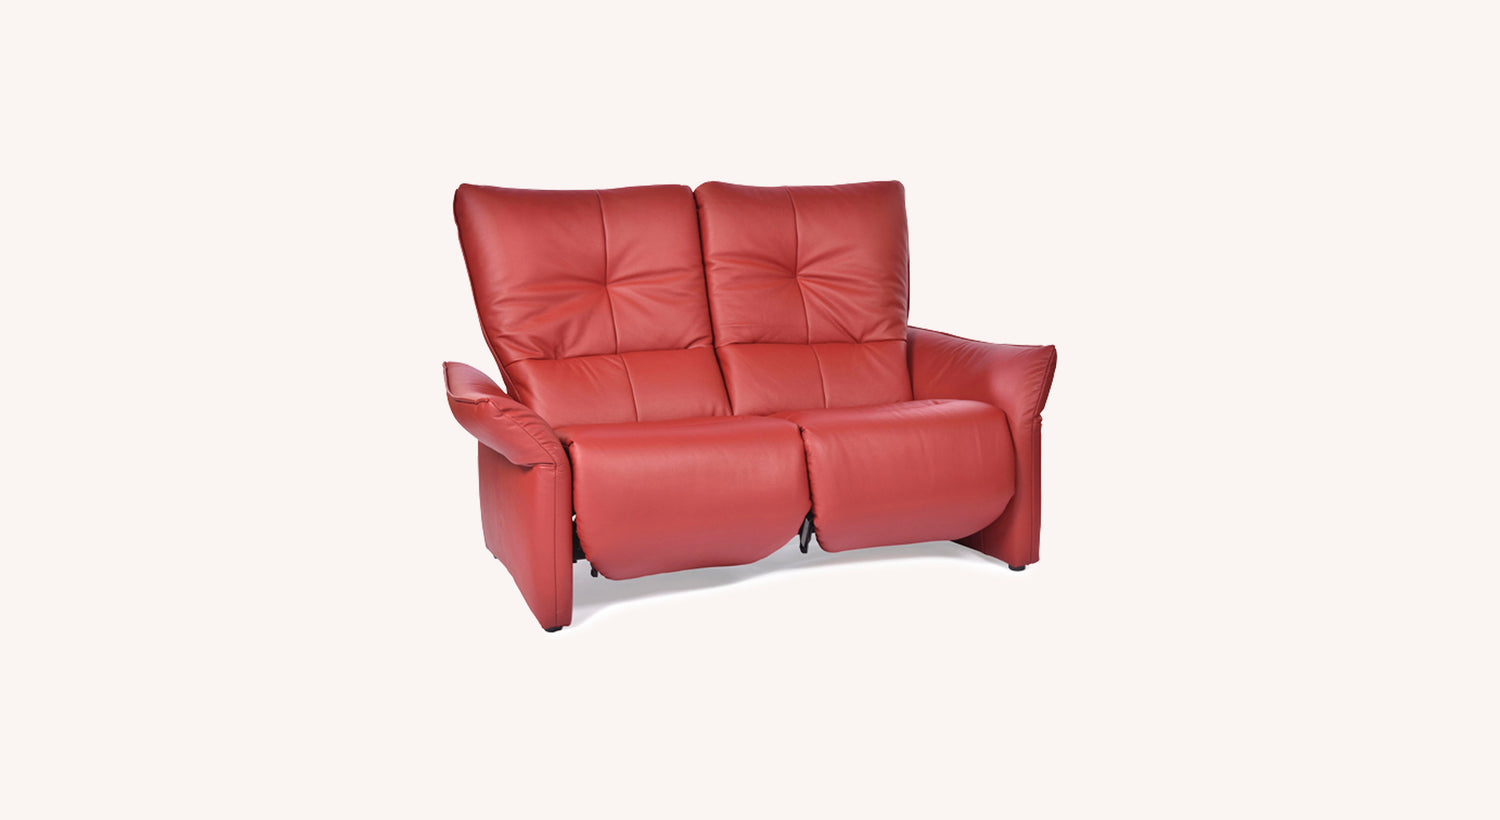 Choisir l’option du canapé relax rouge design et tendance